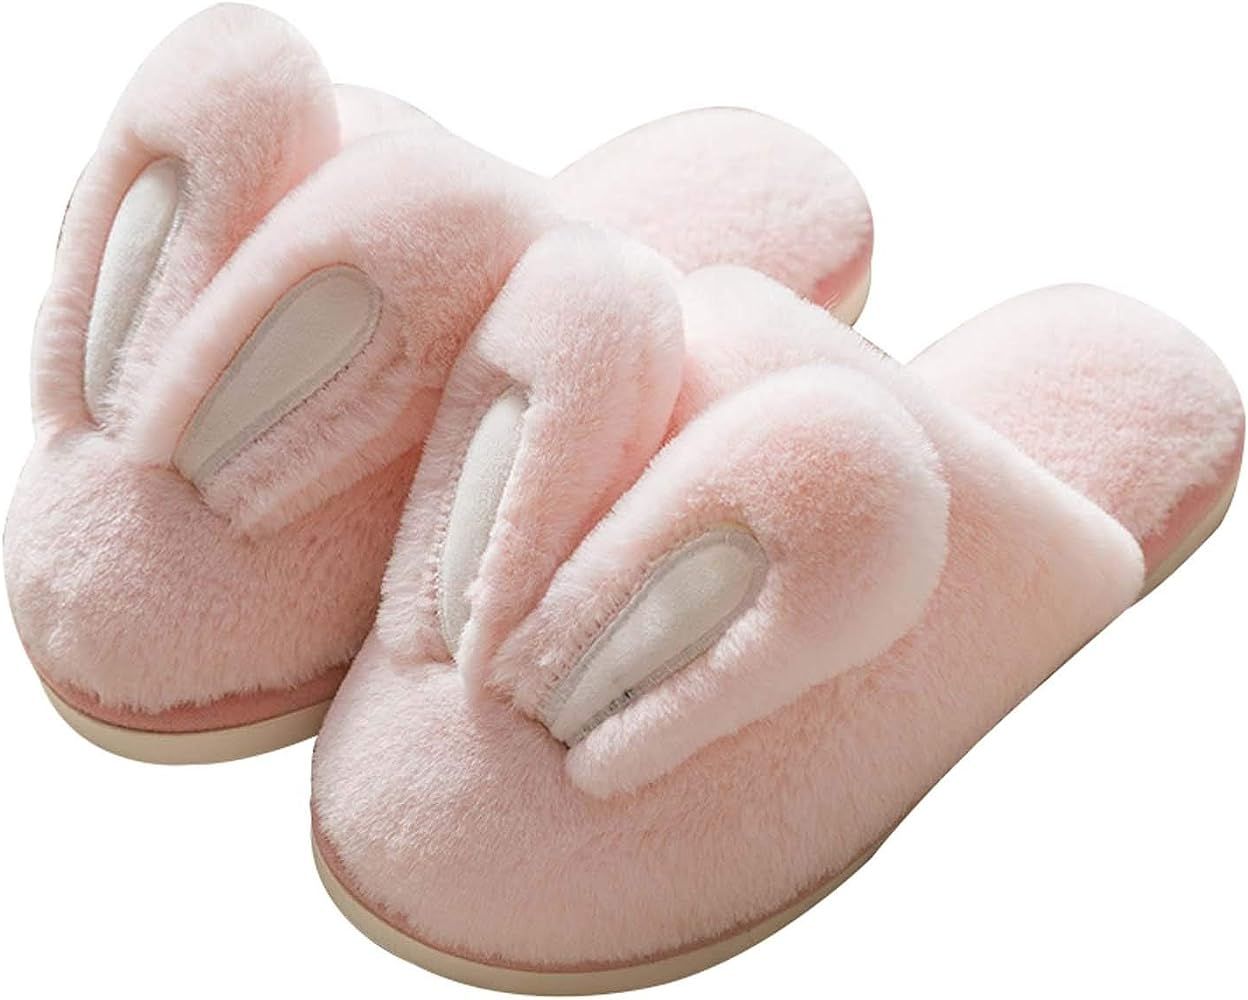 Hopelong Women Slippers, Cute Rabbit Ears Plush House Slippers for Women,Non-Slip Fluffy Slippers... | Amazon (US)